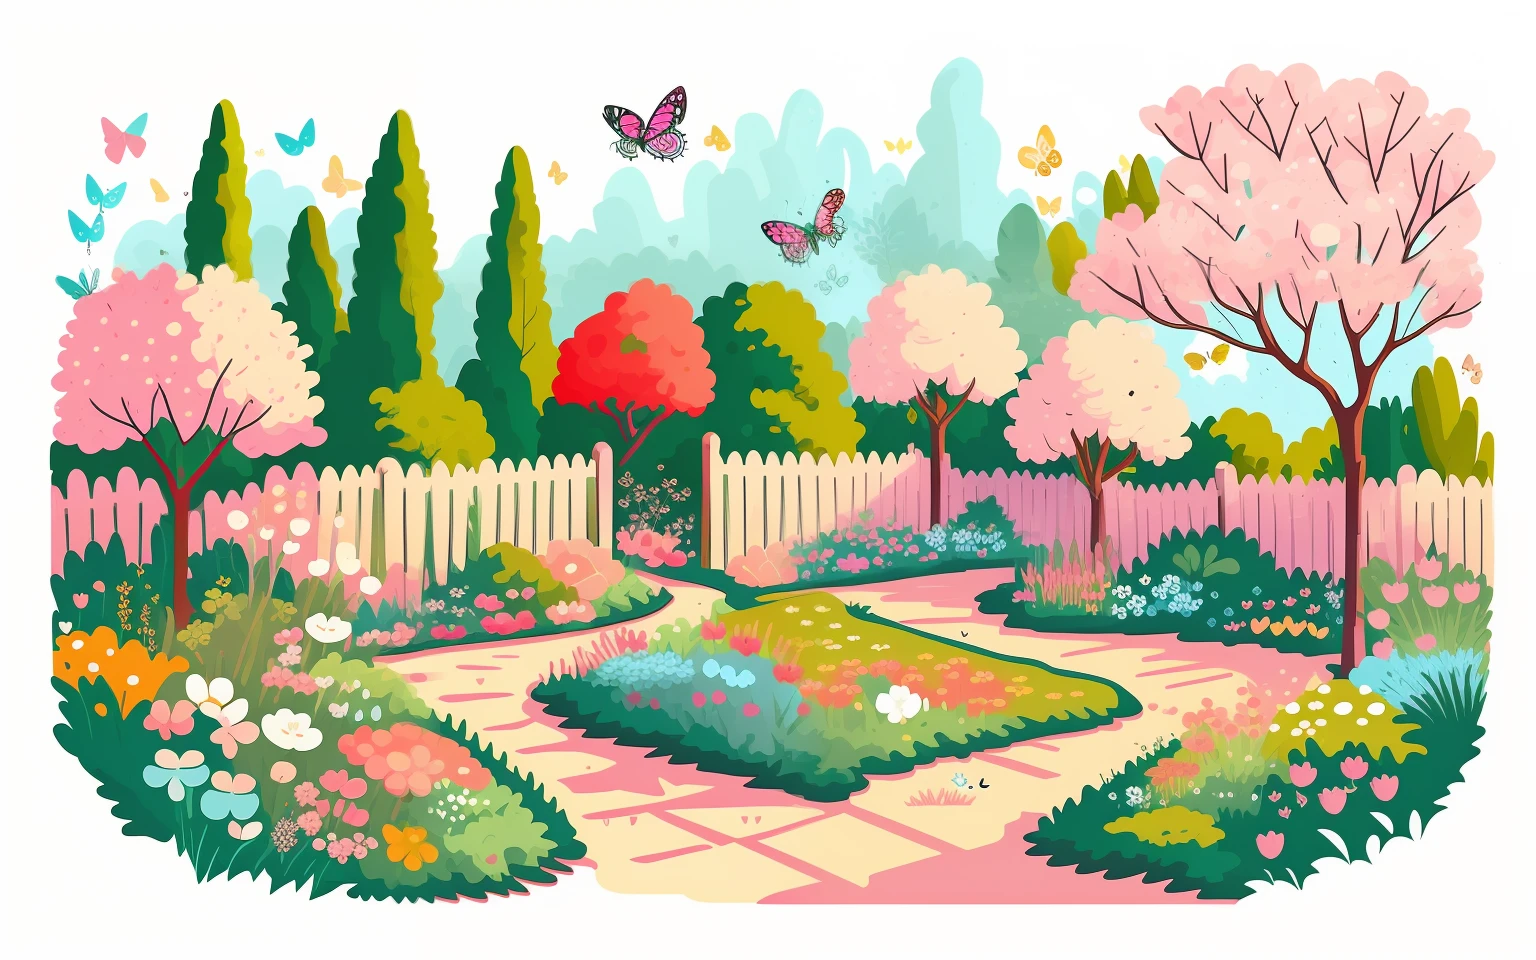 Vektorgrafik eines süßen Kawaii-Gartens mit Schmetterlingen, gepflegte Blumen und Sträucher , funkelt, bunt, Frühling, Mindestliste